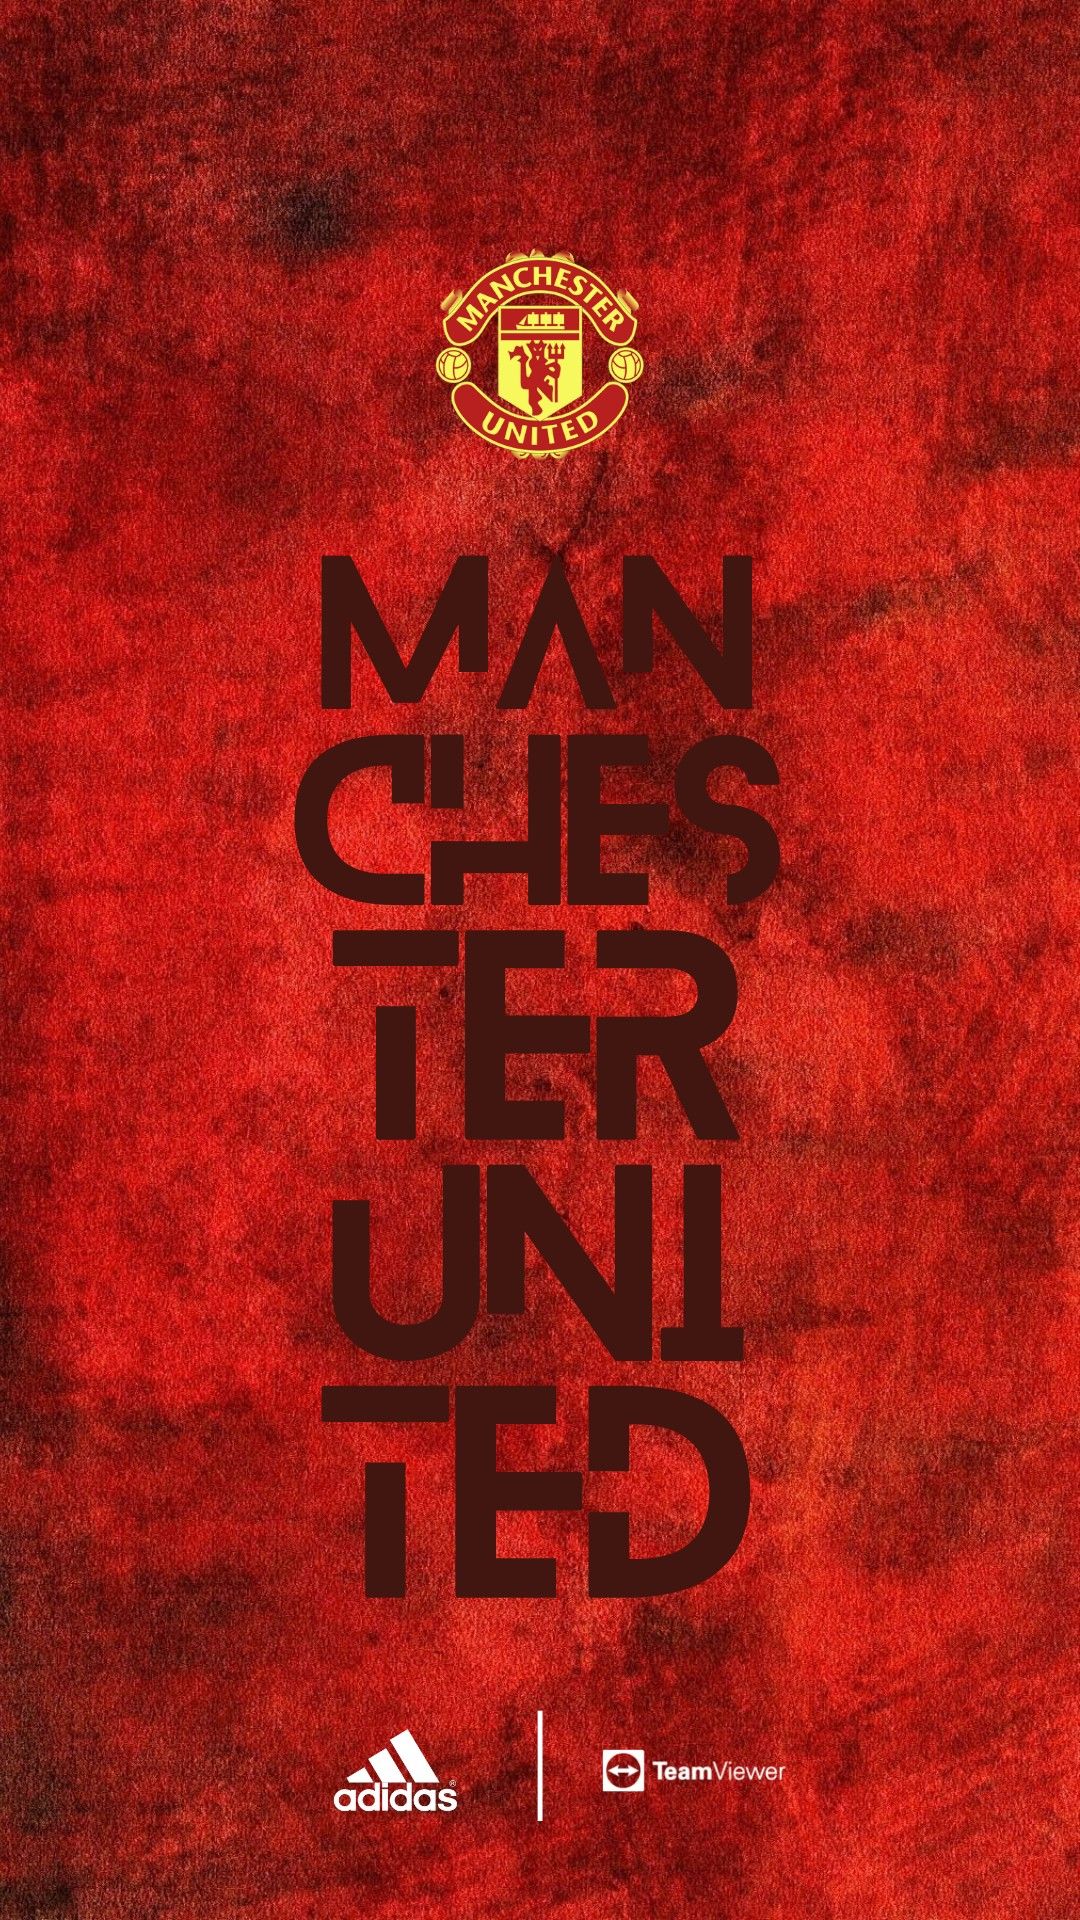 Manchester United ideas. manchester united, manchester, manchester united wallpaper